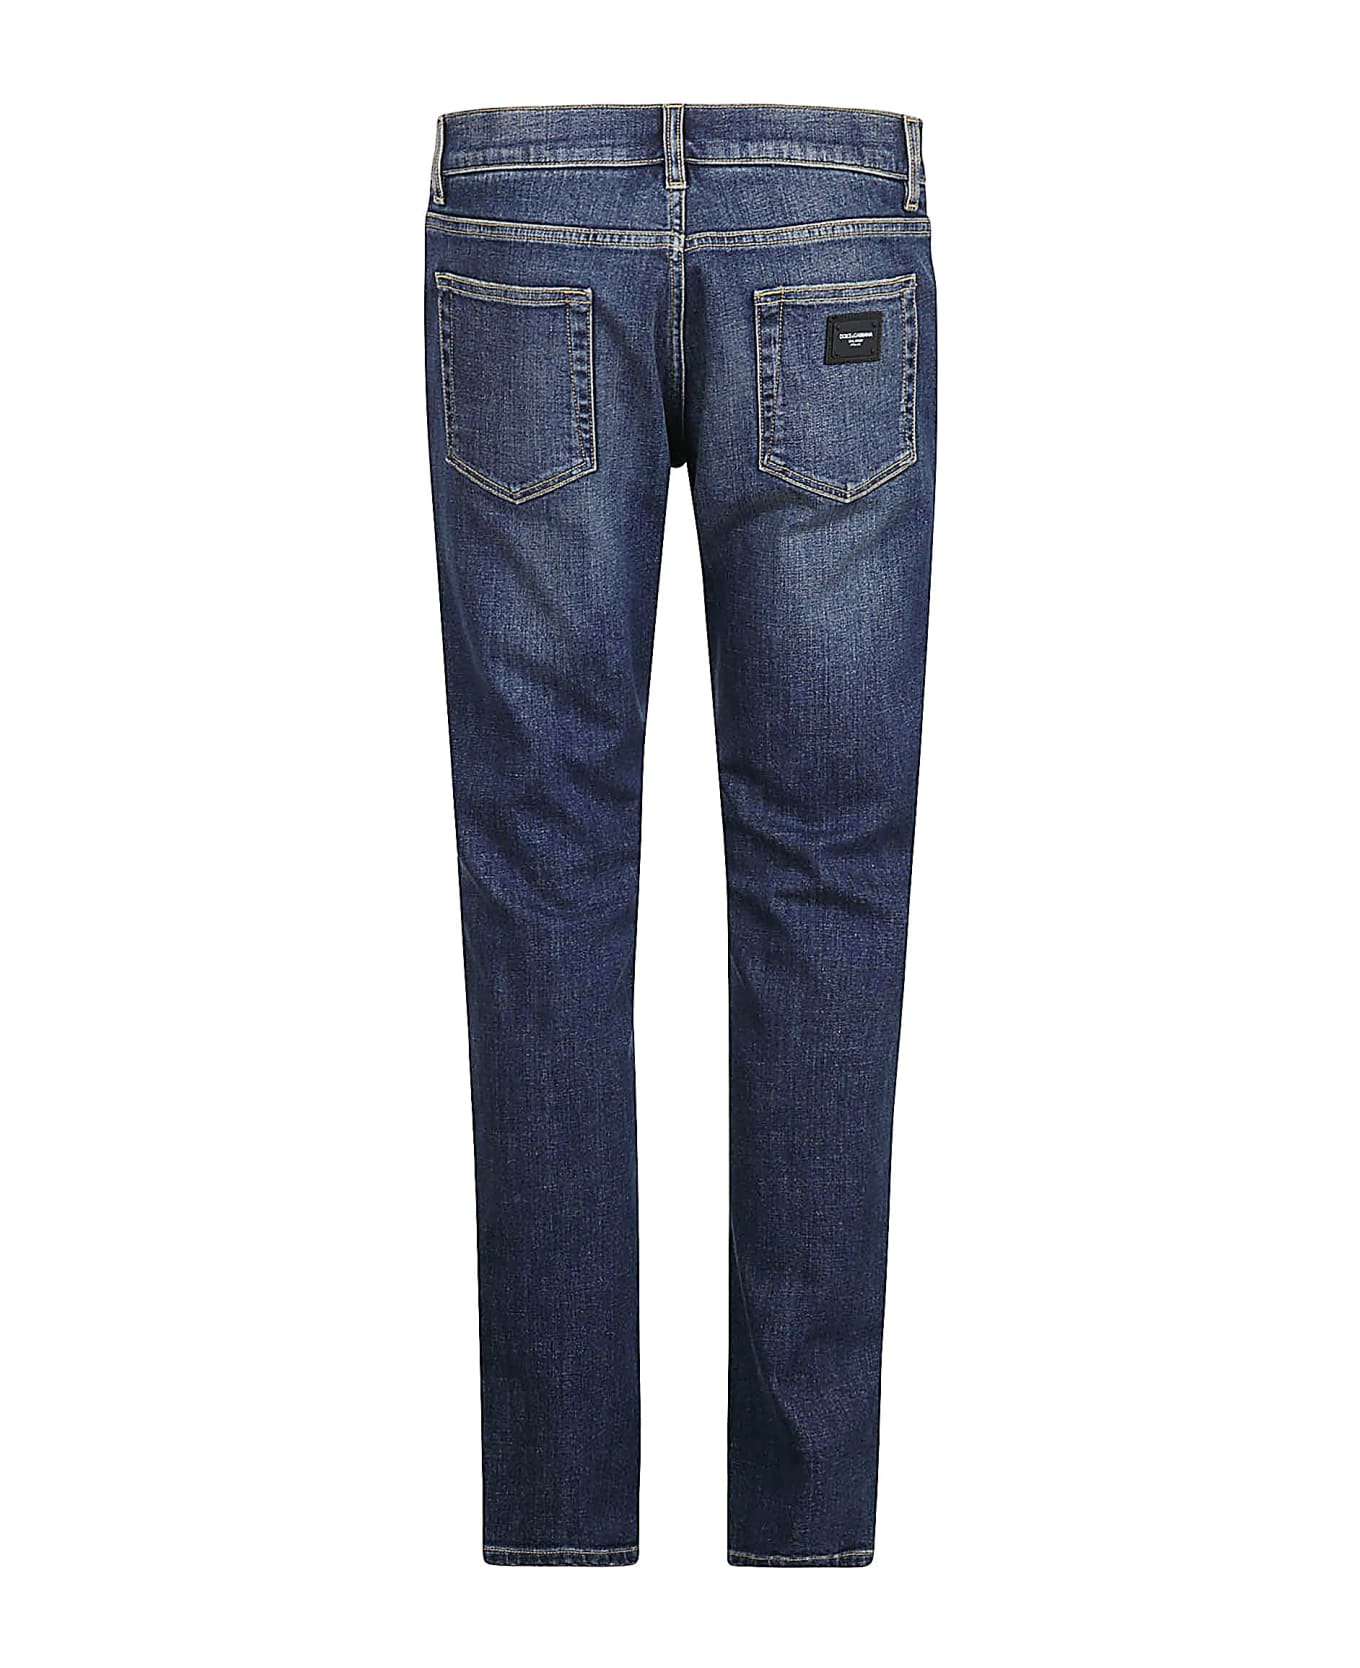 Dolce & Gabbana Classic 5 Pockets Denim Jeans - VAR ABBINATA